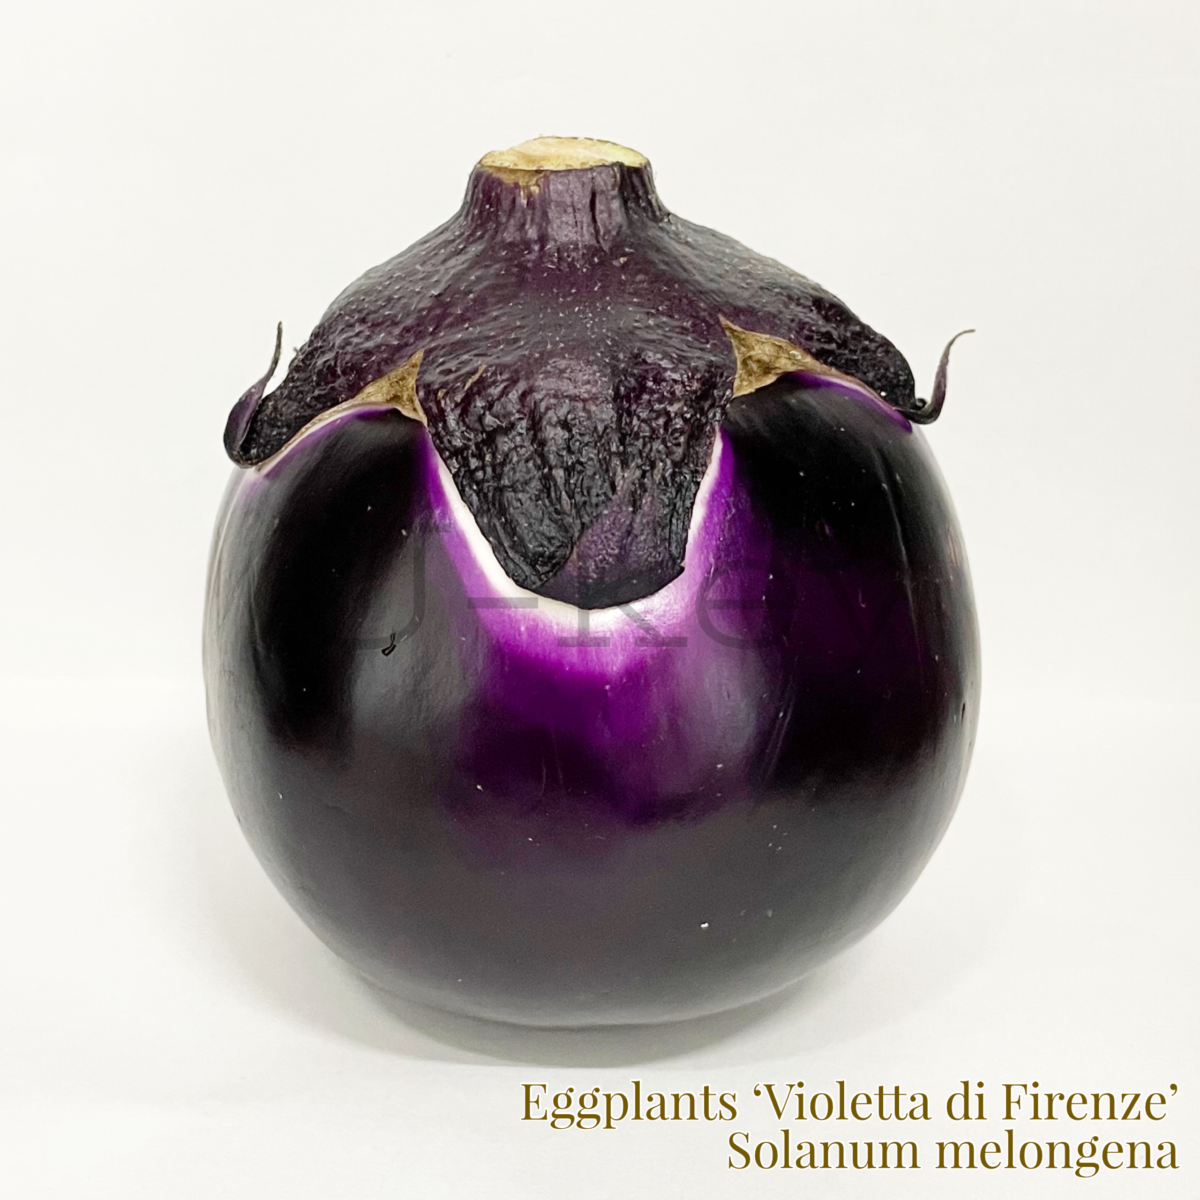 Eggplants ‘Violetta di Firenze’,Solanum melongena